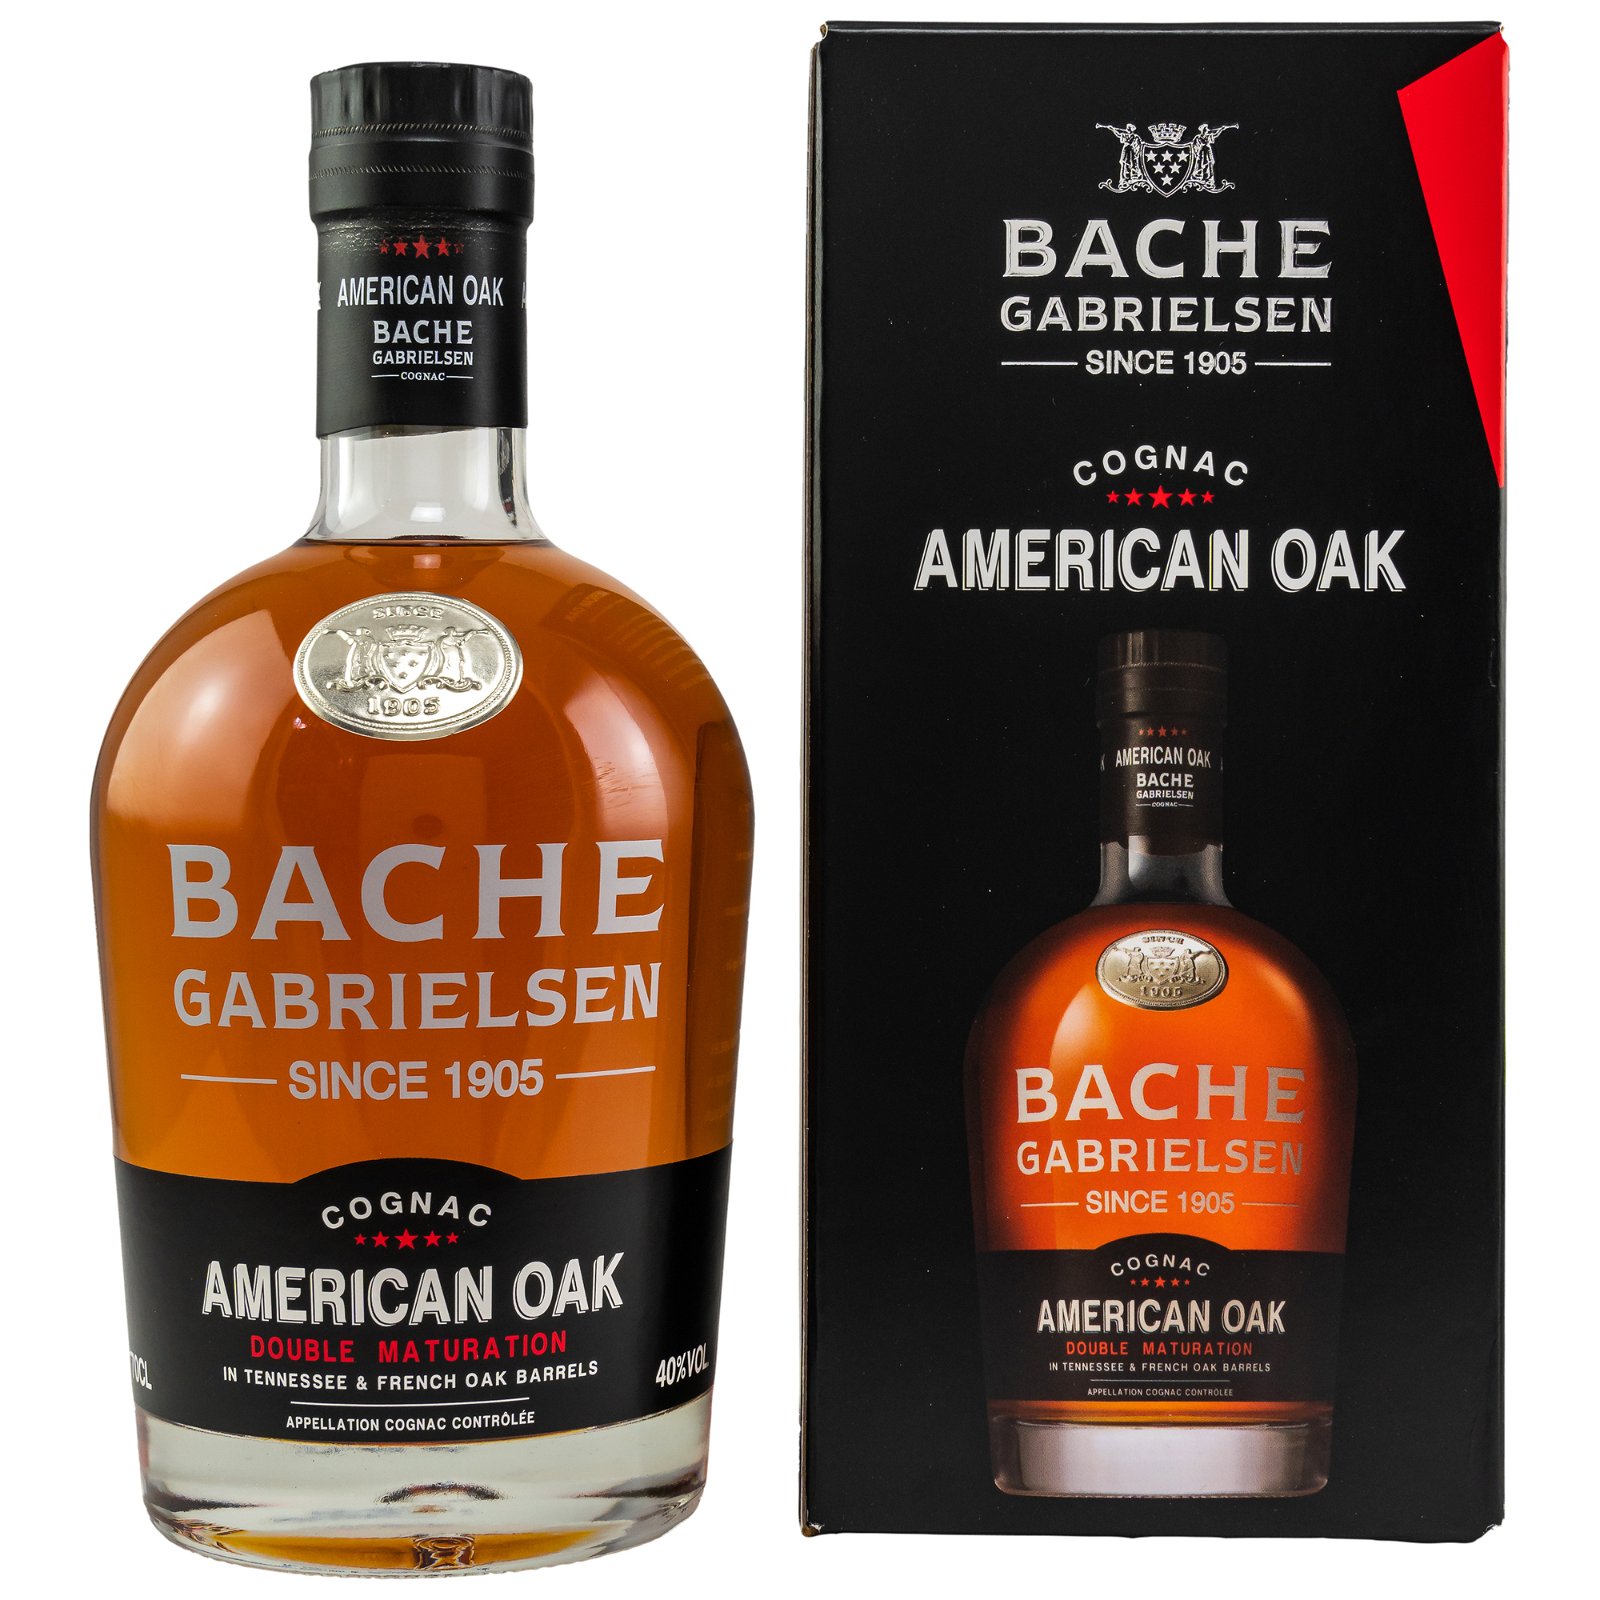 Bache-Gabrielsen American Oak Double Maturation Cognac 